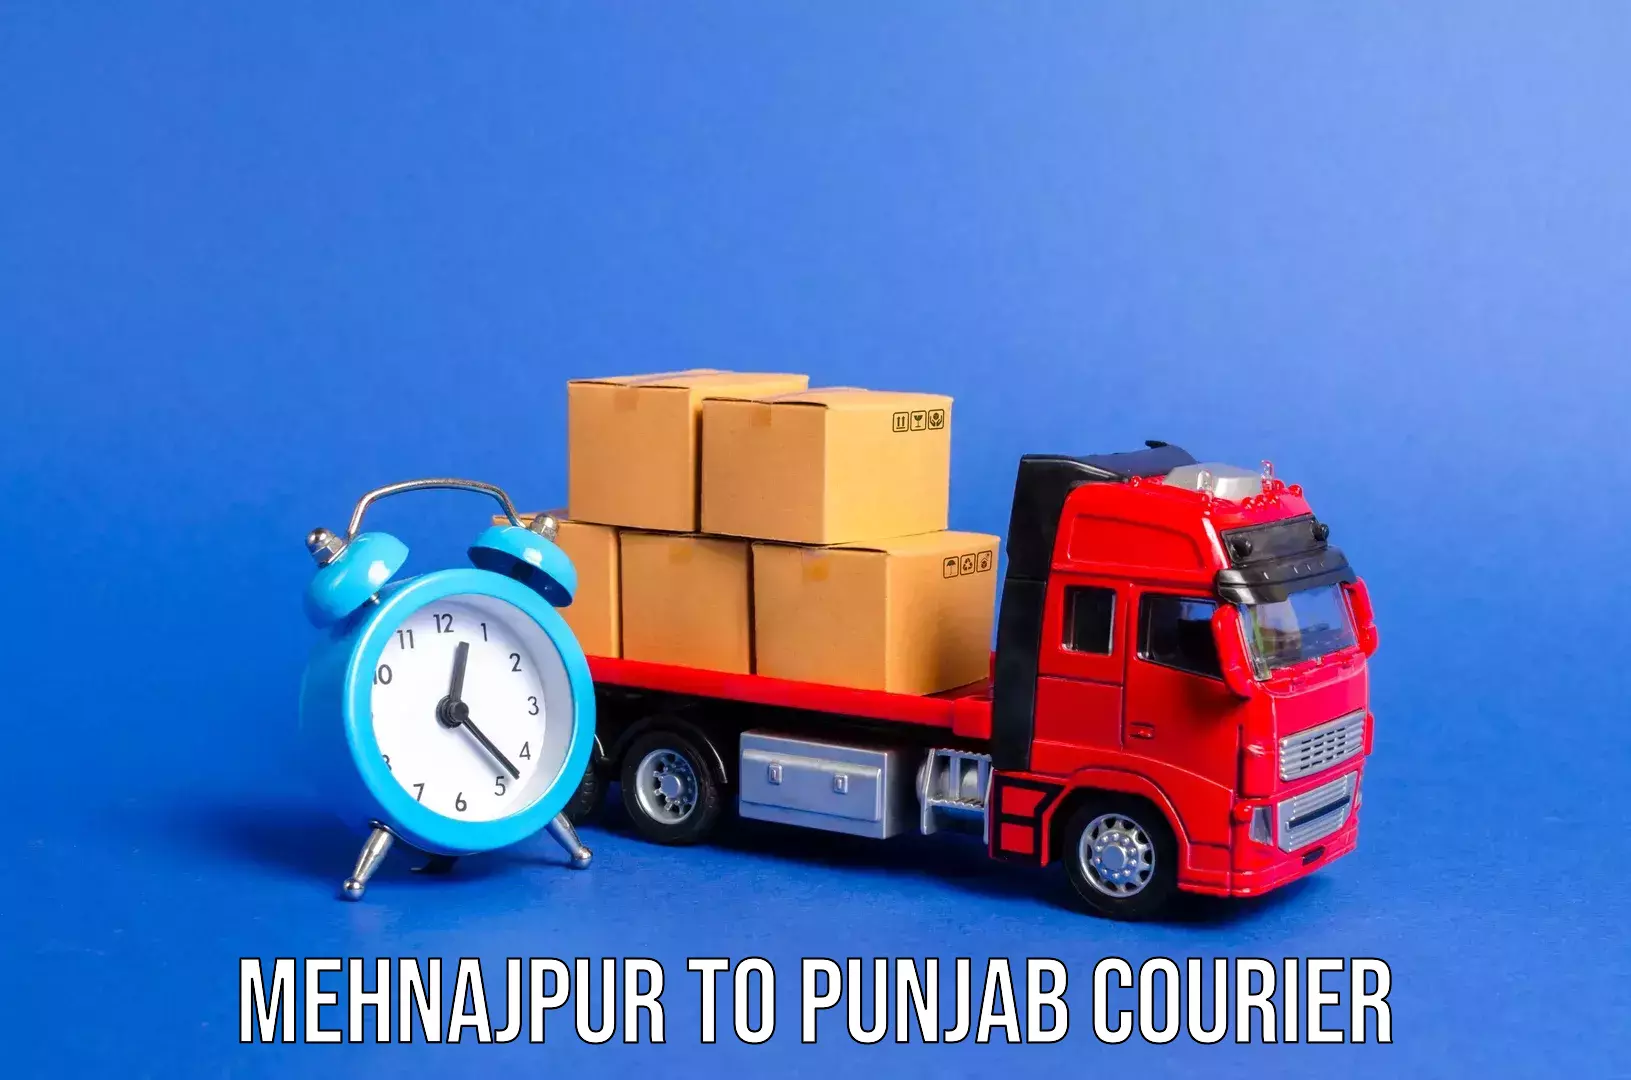 Baggage transport technology Mehnajpur to Punjab